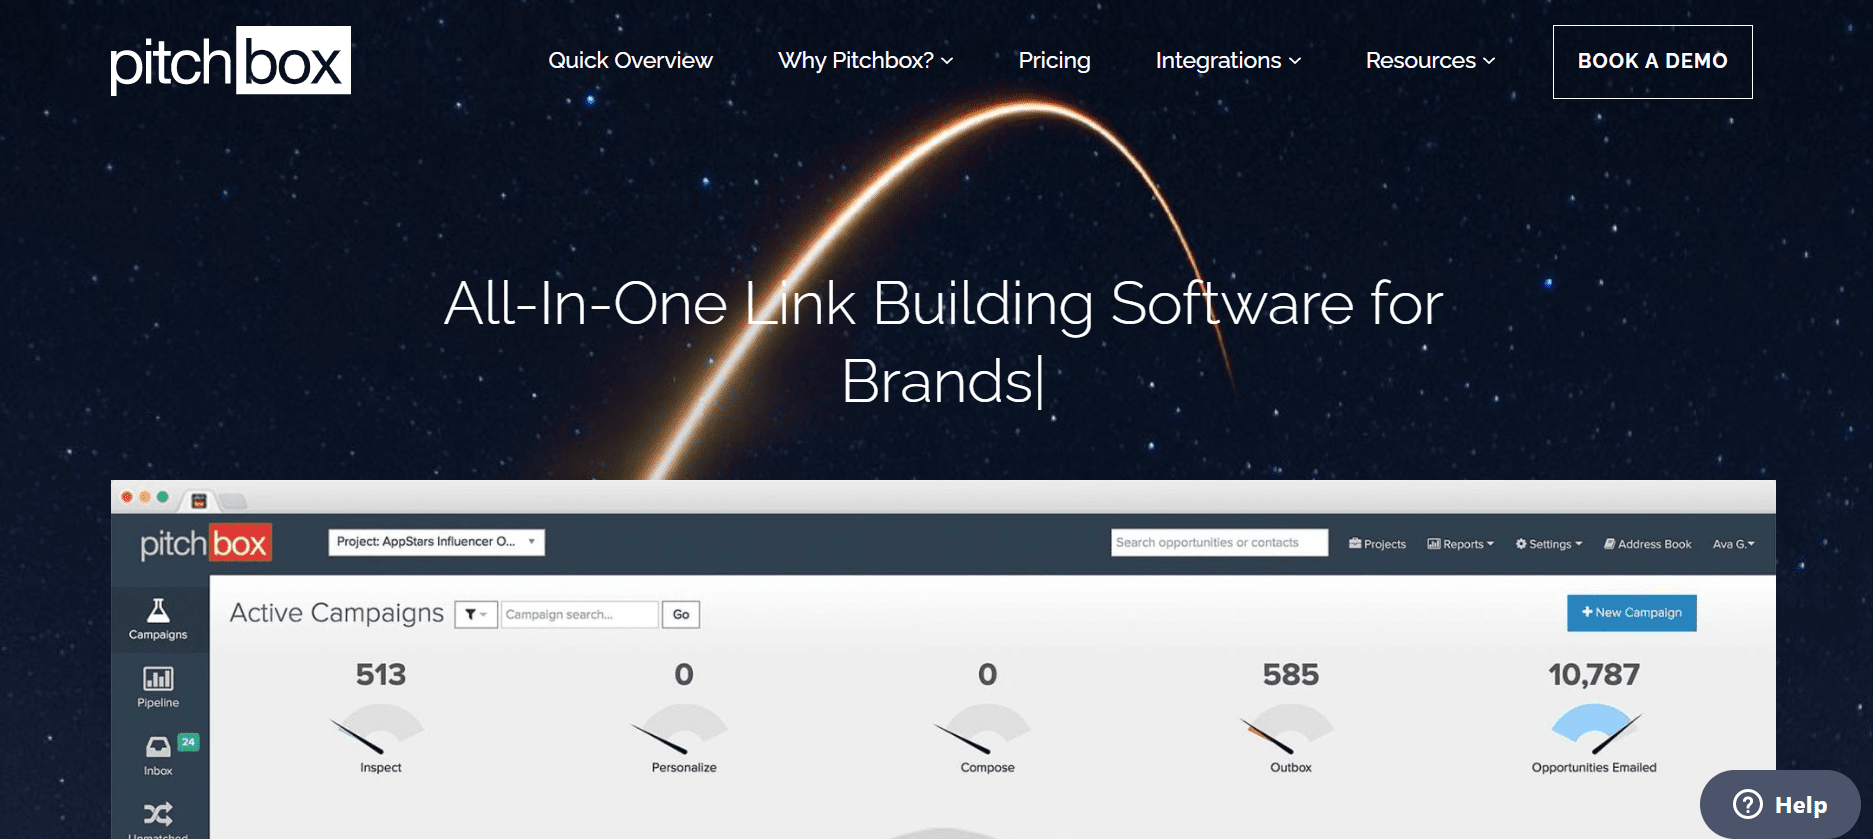 pitchbox link building software for brands